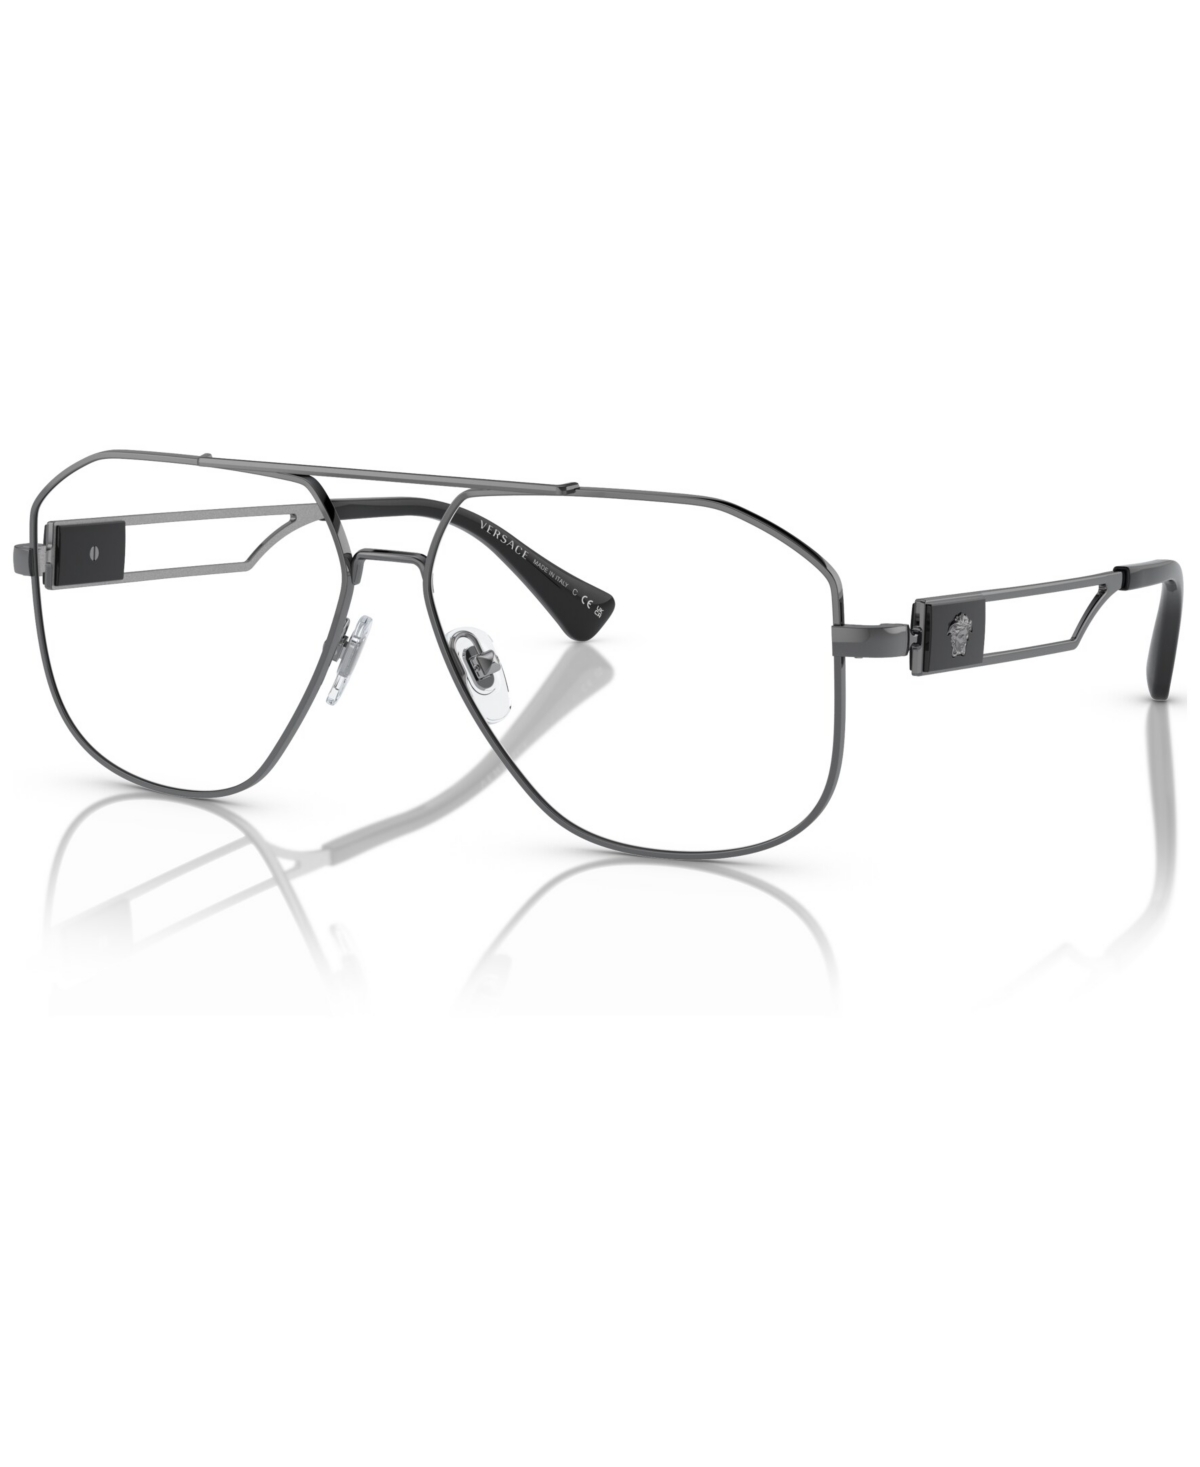 Men's Pilot Eyeglasses, VE1287 59 - Gray